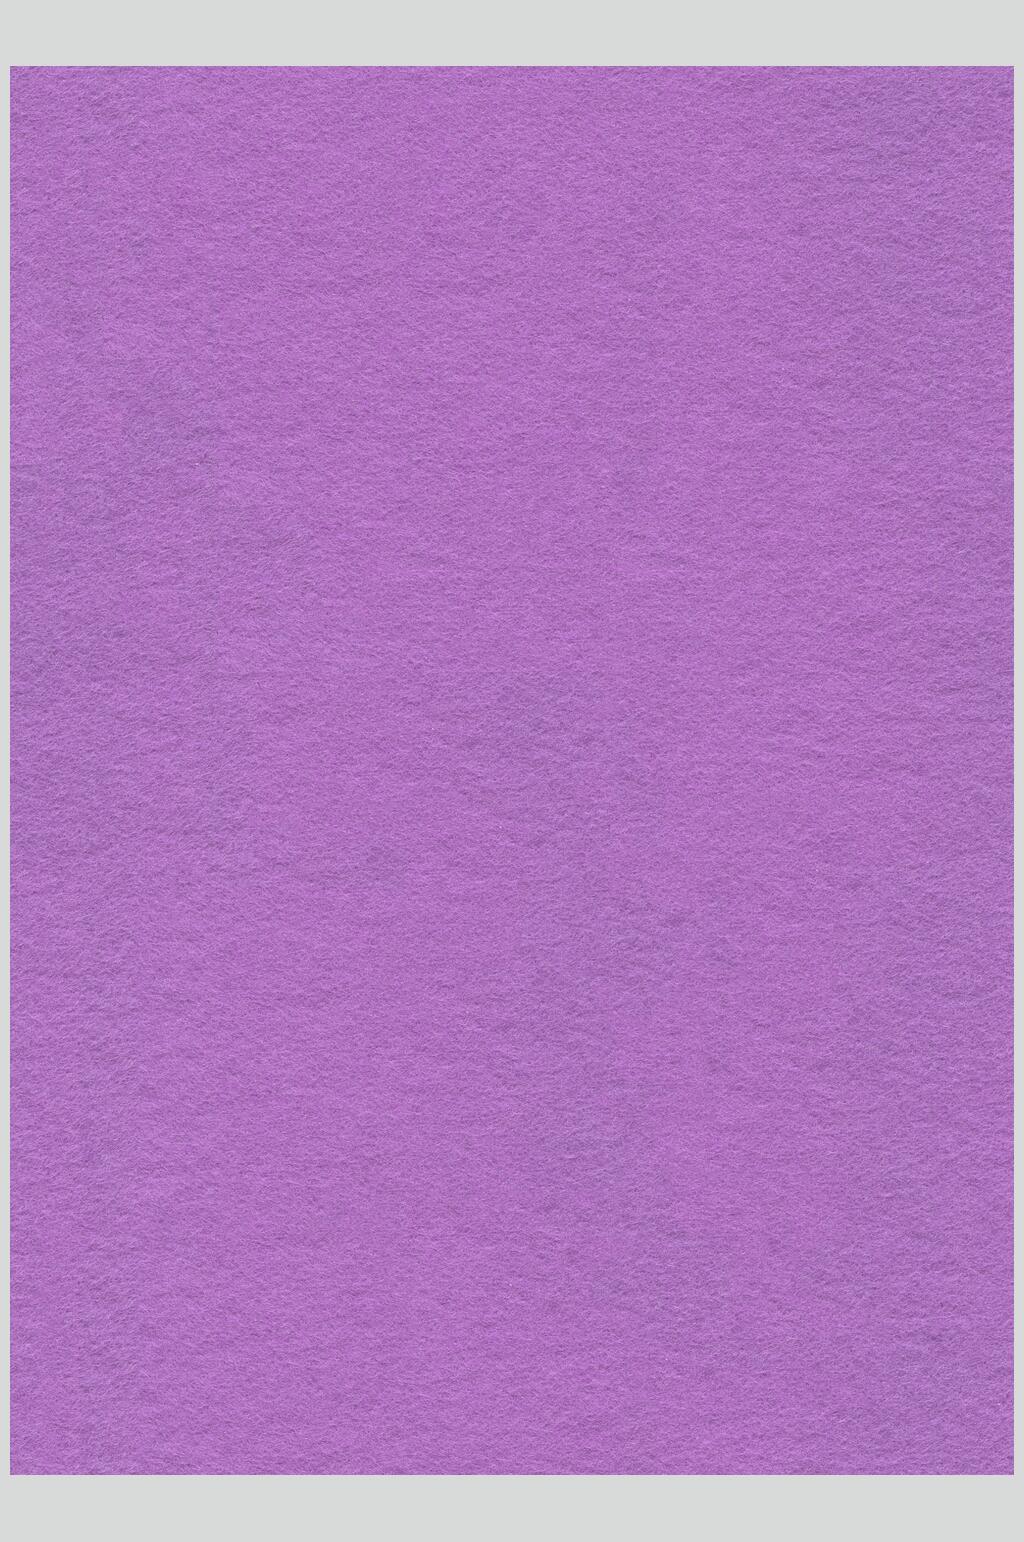 小组件图片素材紫色图片